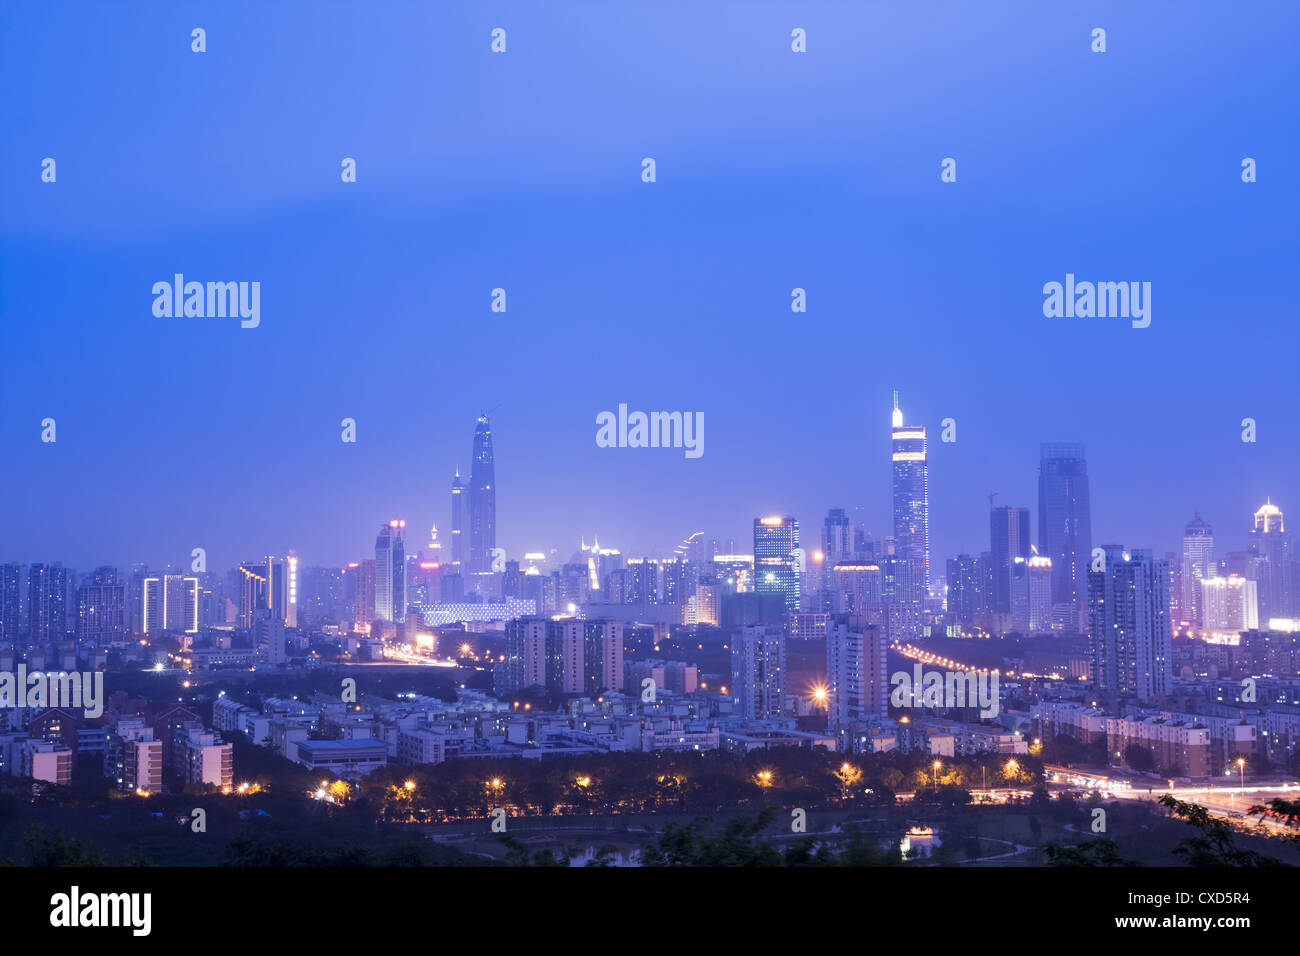 night scene of shenzhen city Stock Photo